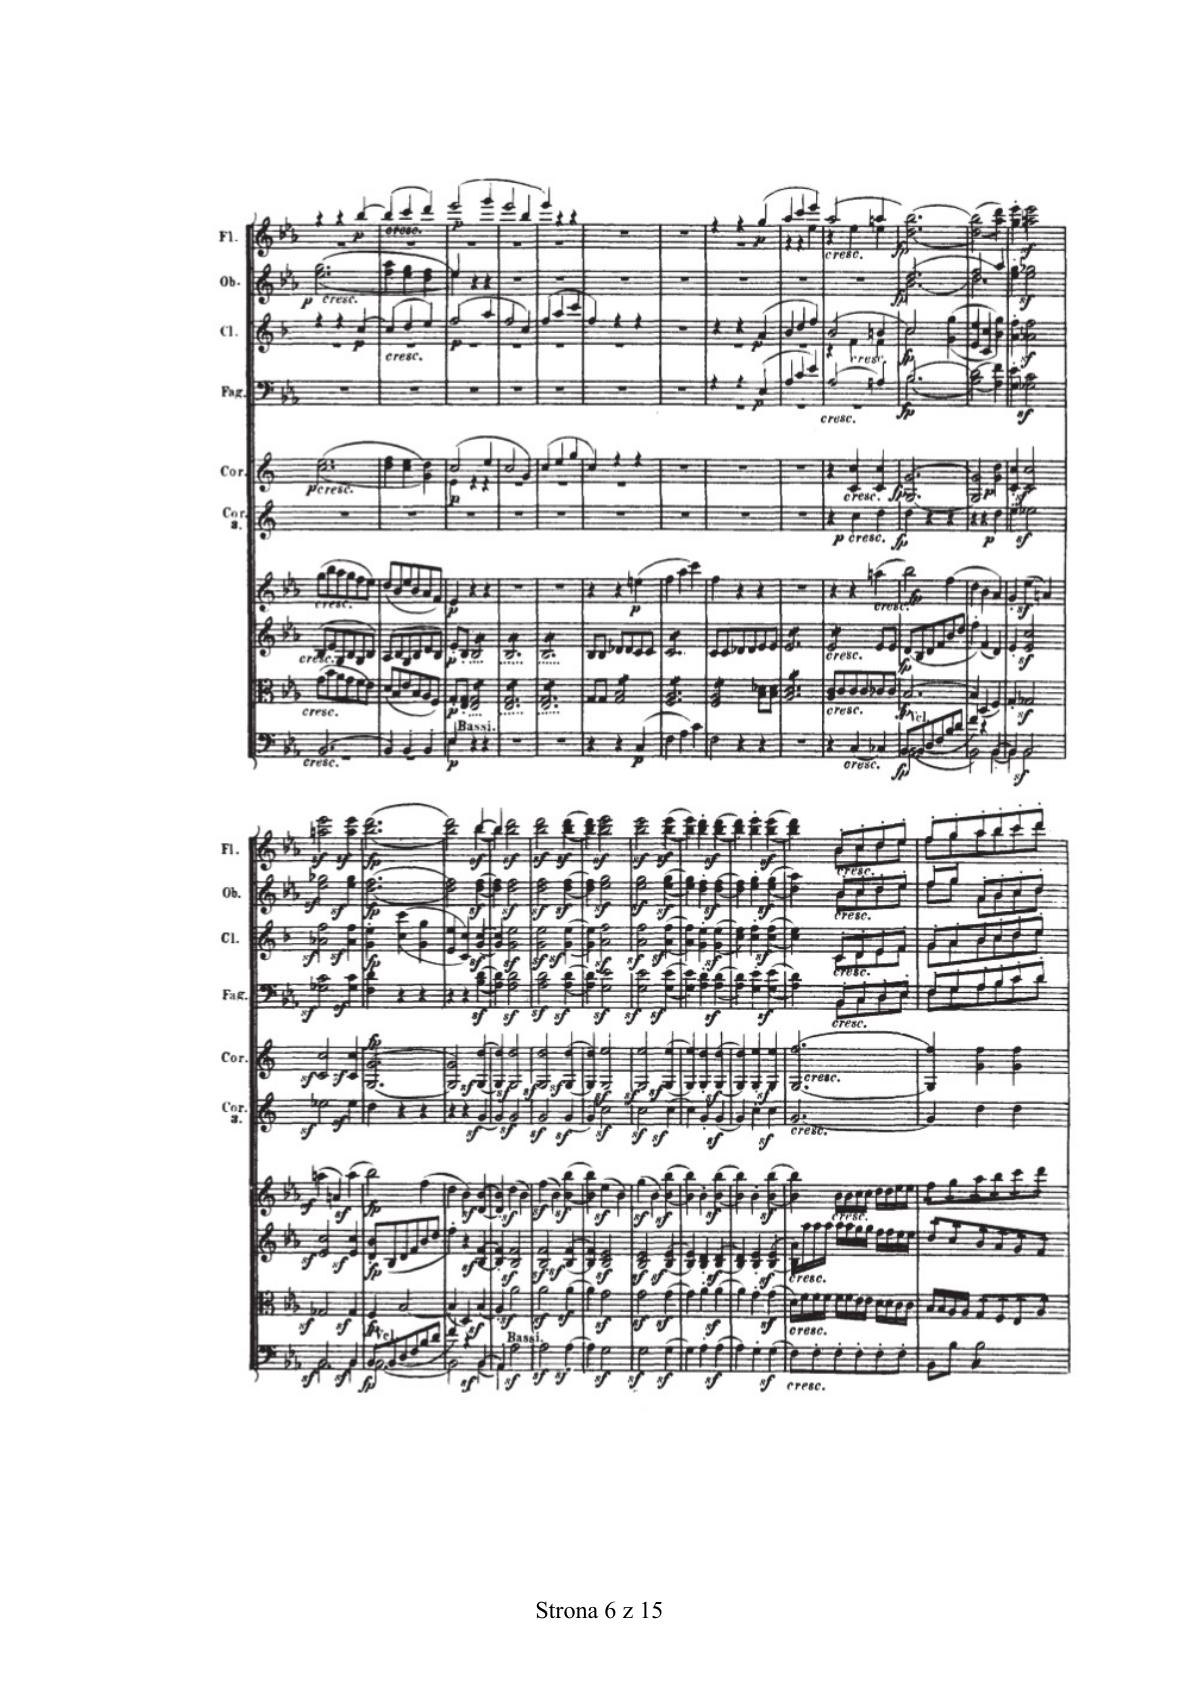 zadanie 17 - Ludwig van Beethoven, III Symfonia Es-dur op. 55, cz. I - fragment-2